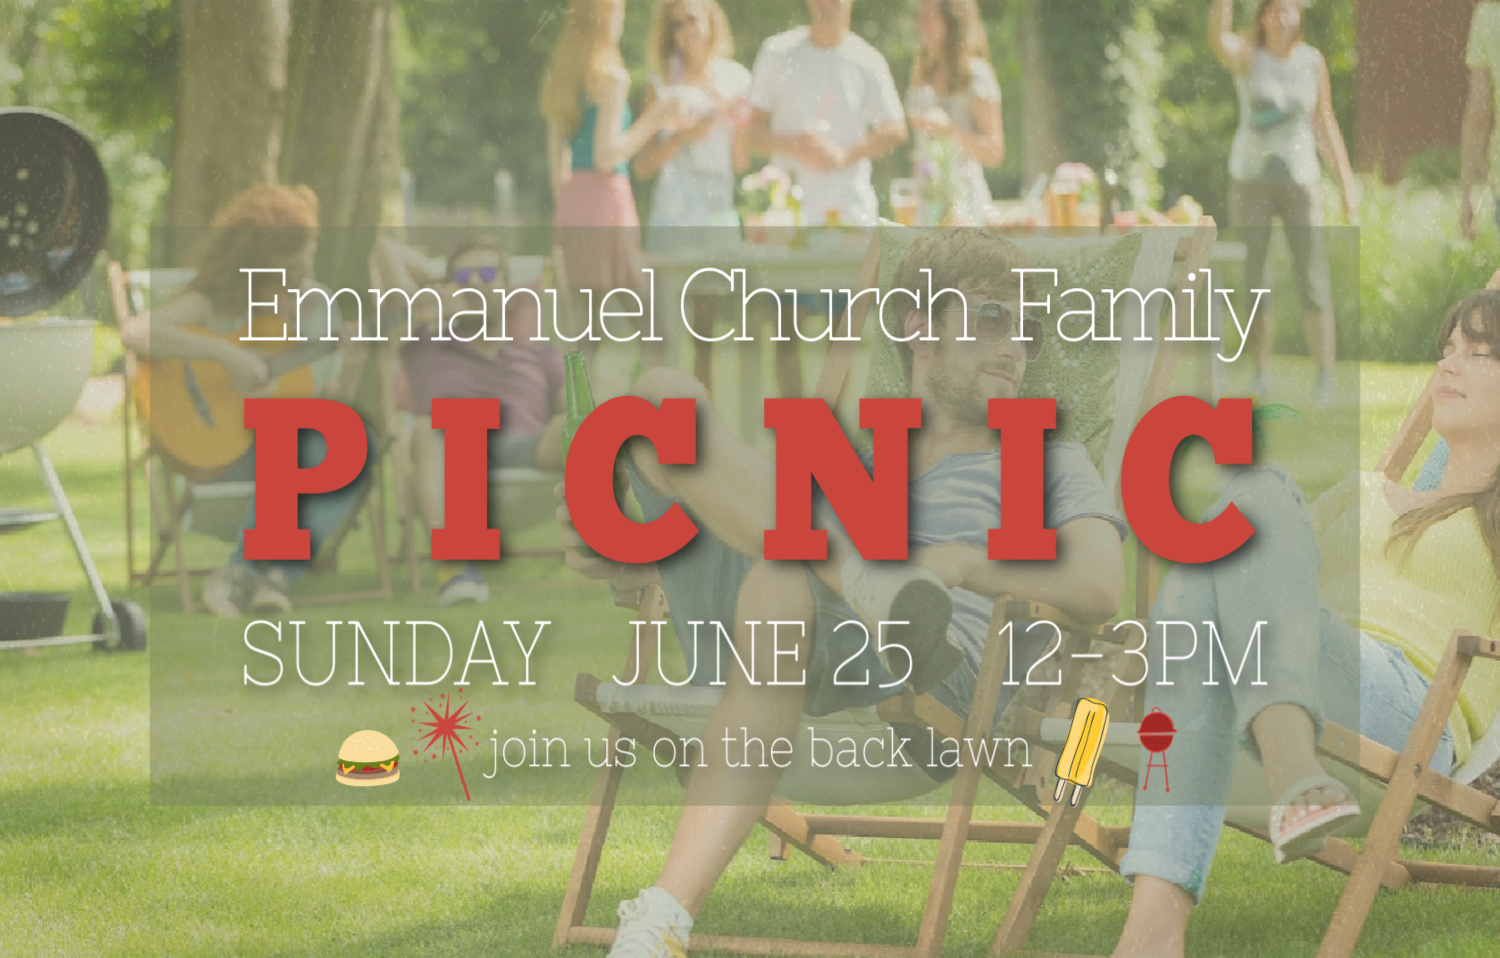 picnic invite June 25 at ebc